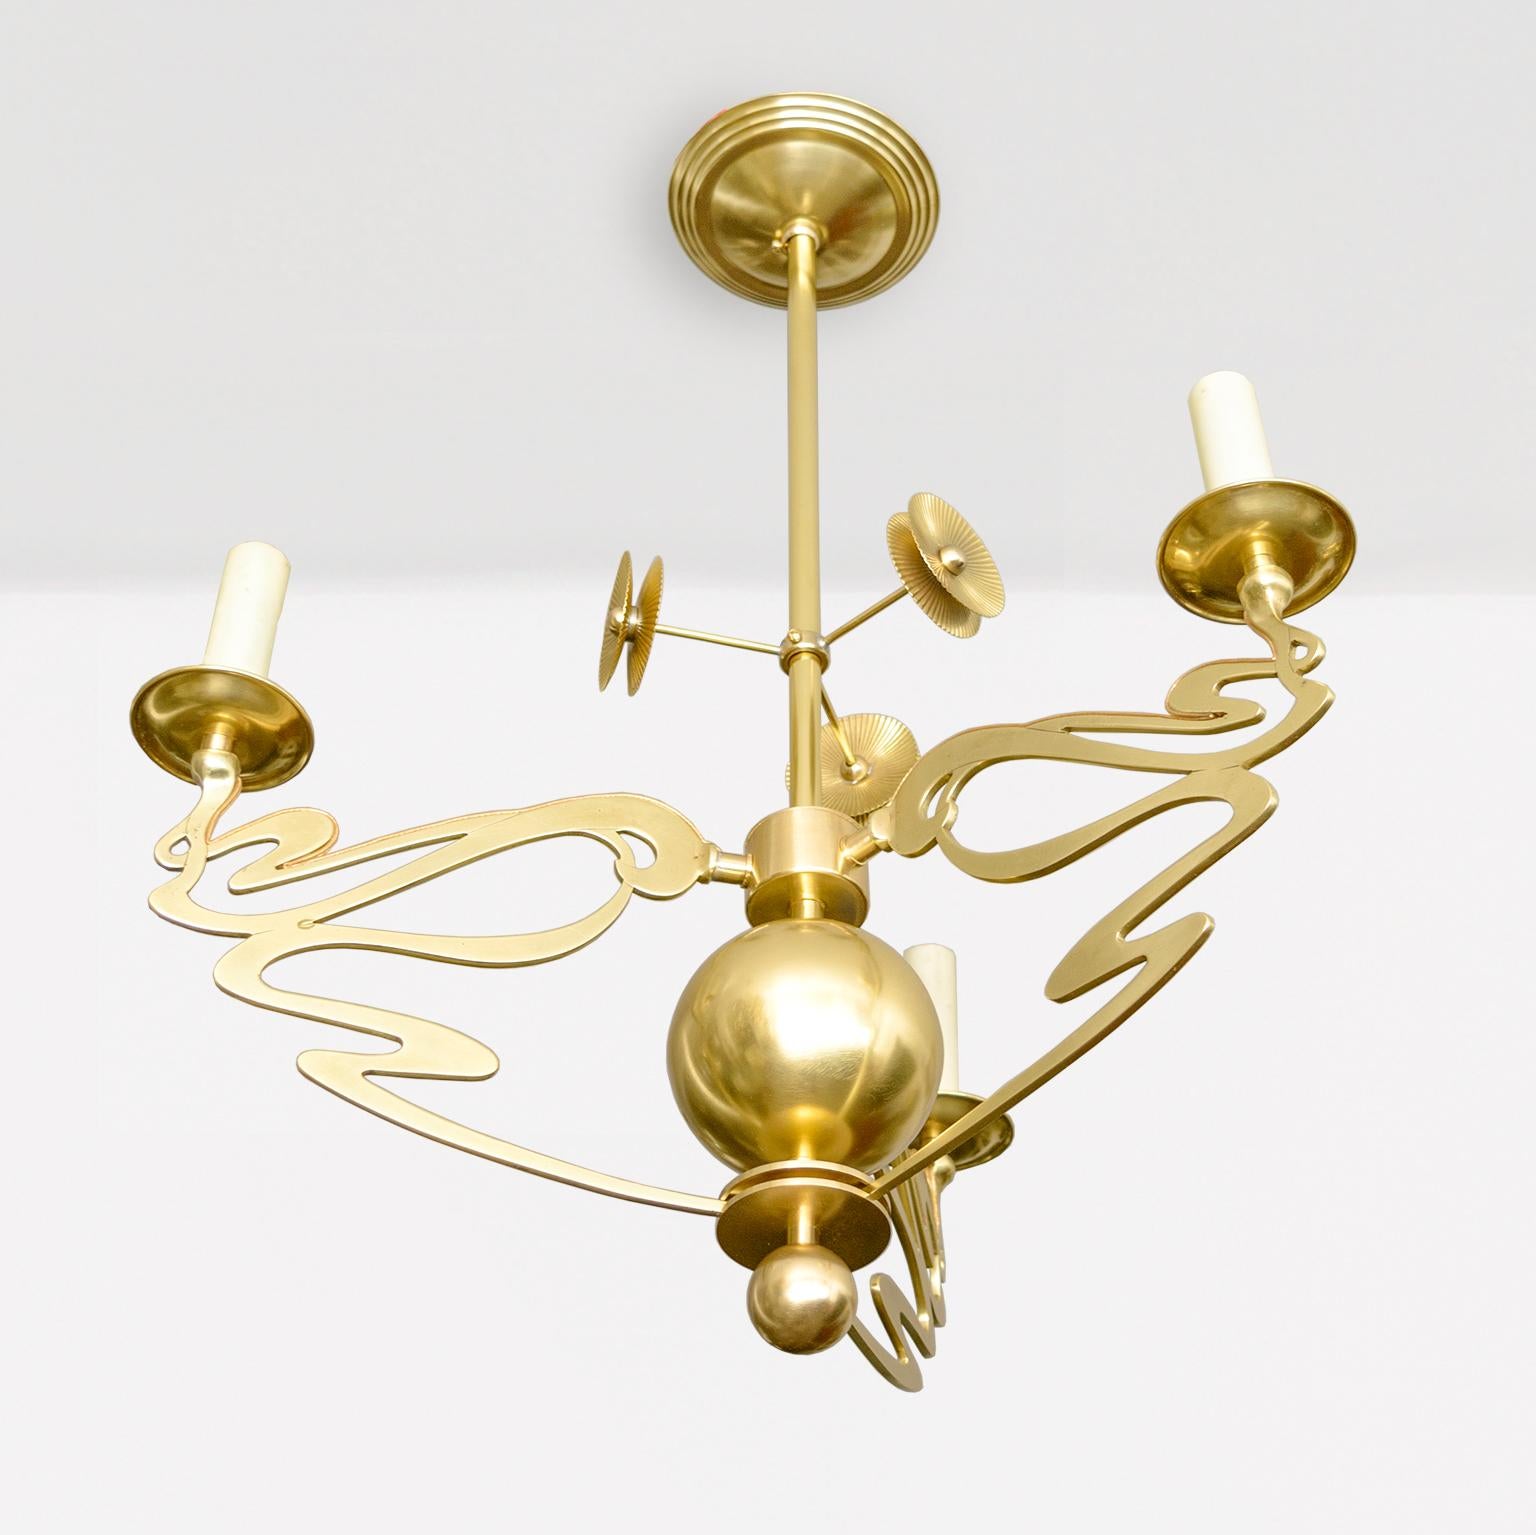 Polished Swedish Jugendstil, Art Nouveau 3-arm chandelier of polished brass, B For Sale